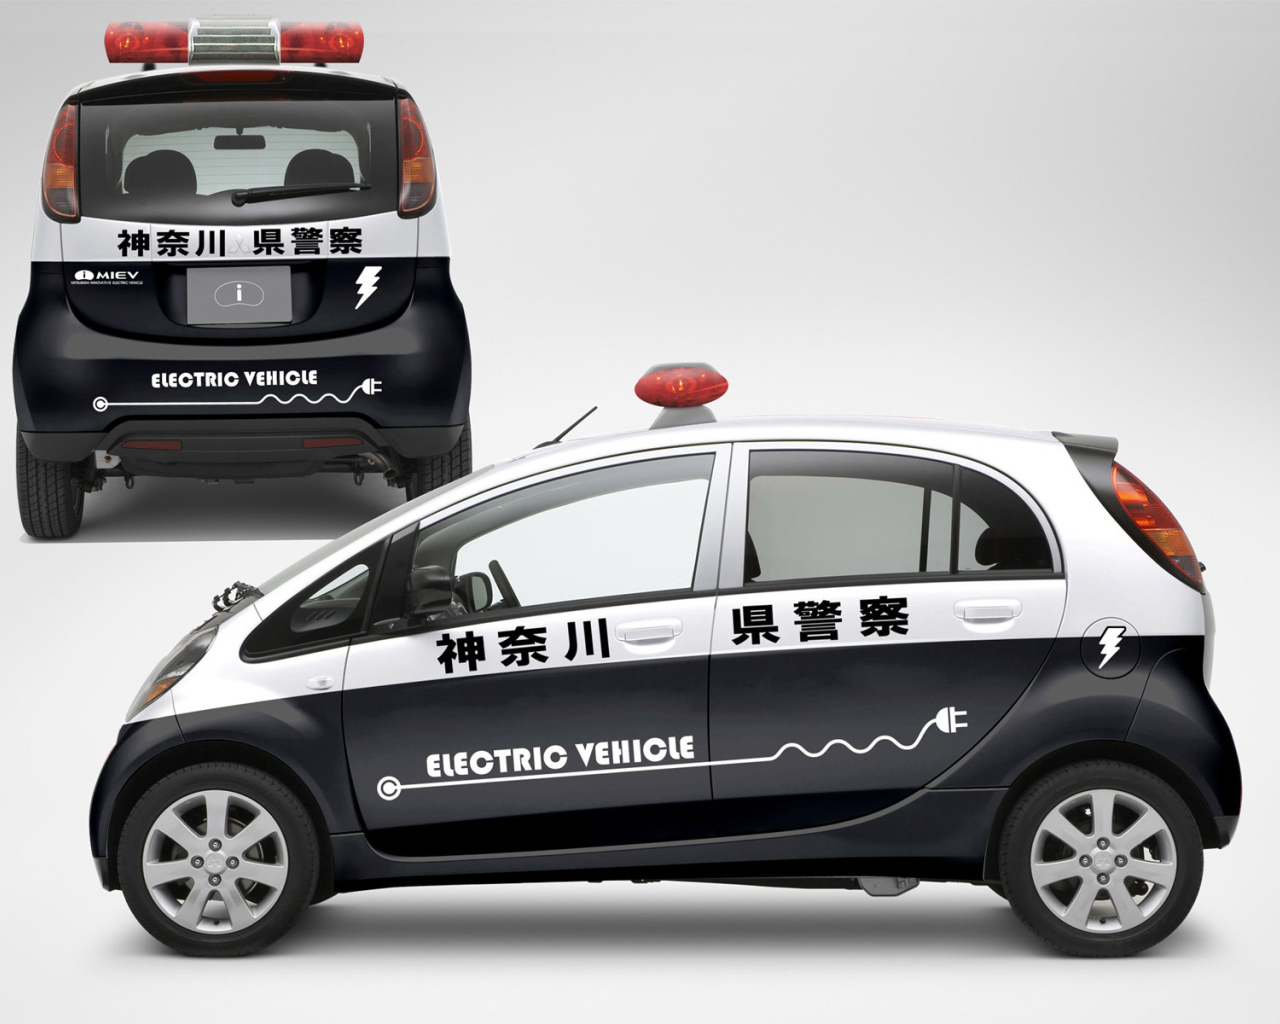 Новая машина Mitsubishi Electric